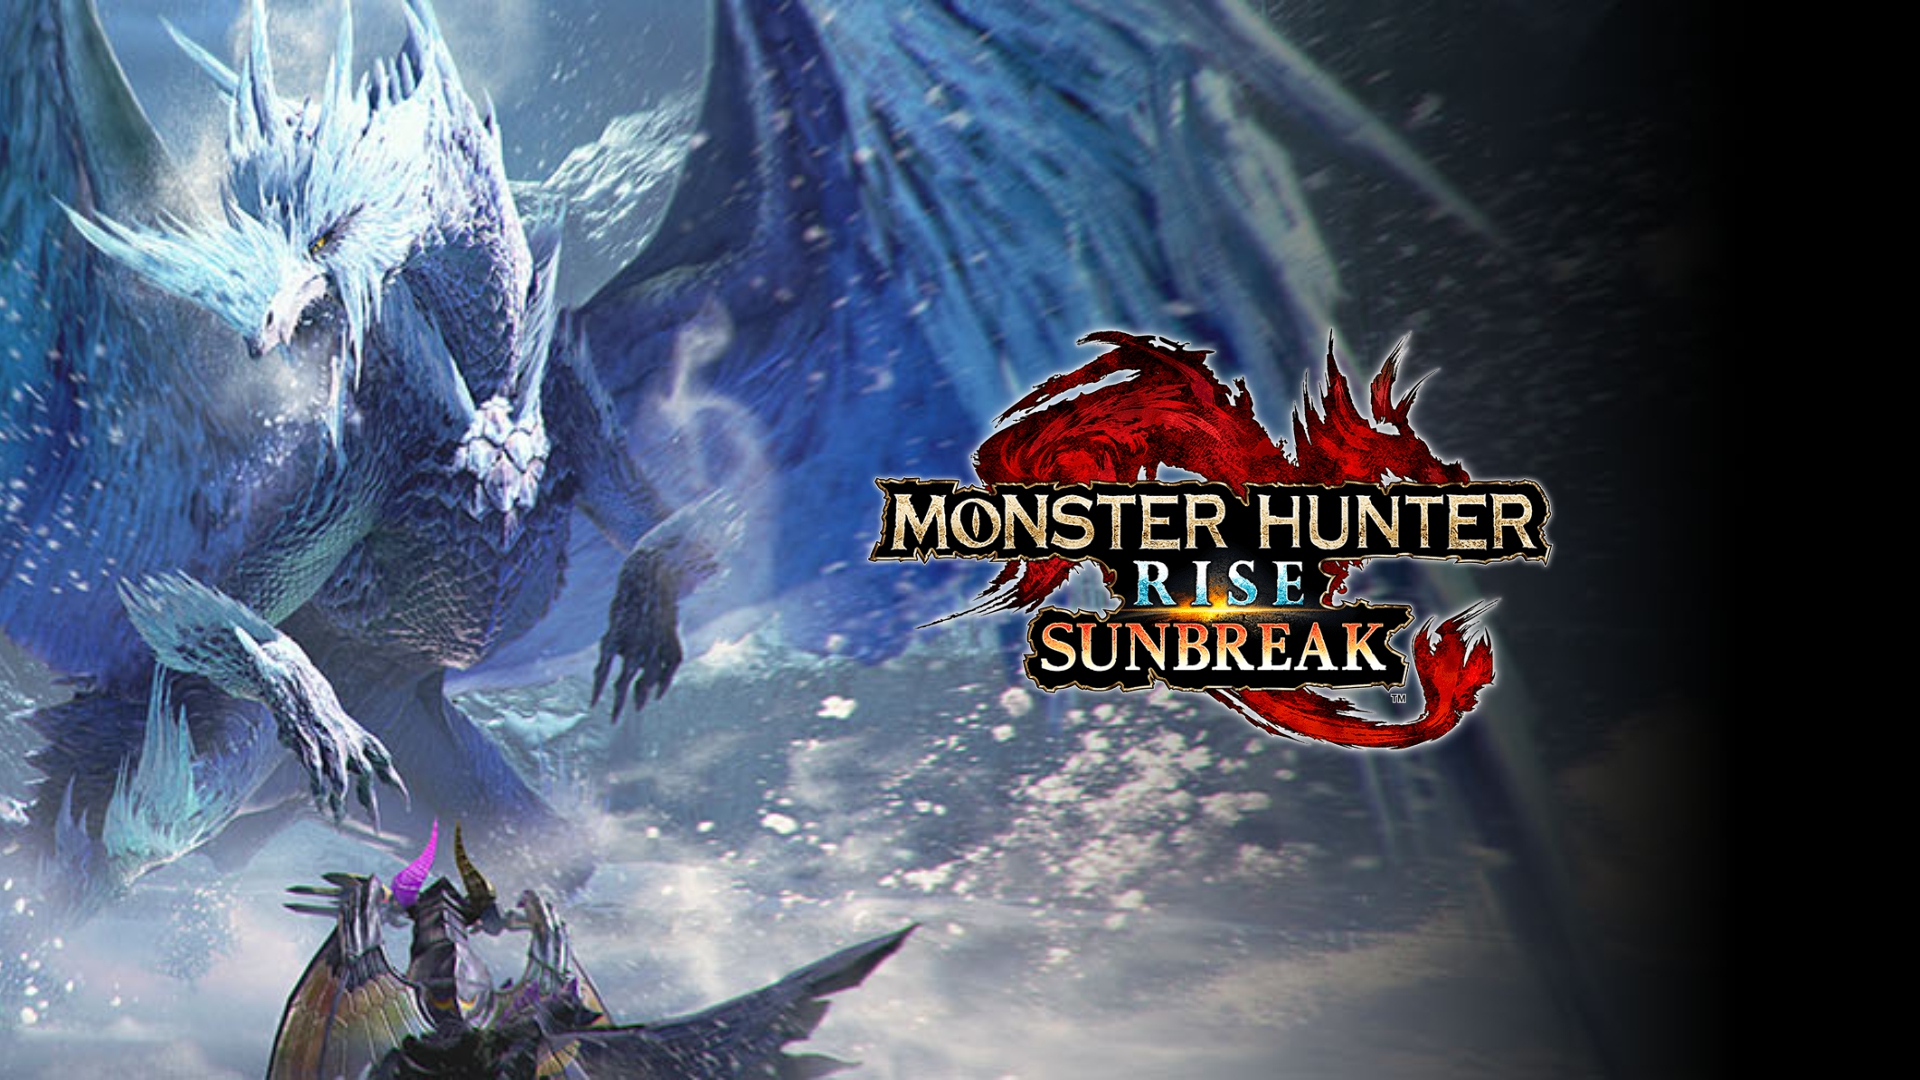 Monster Hunter Rise Preview - Monster Hunter Rise: Sunbreak